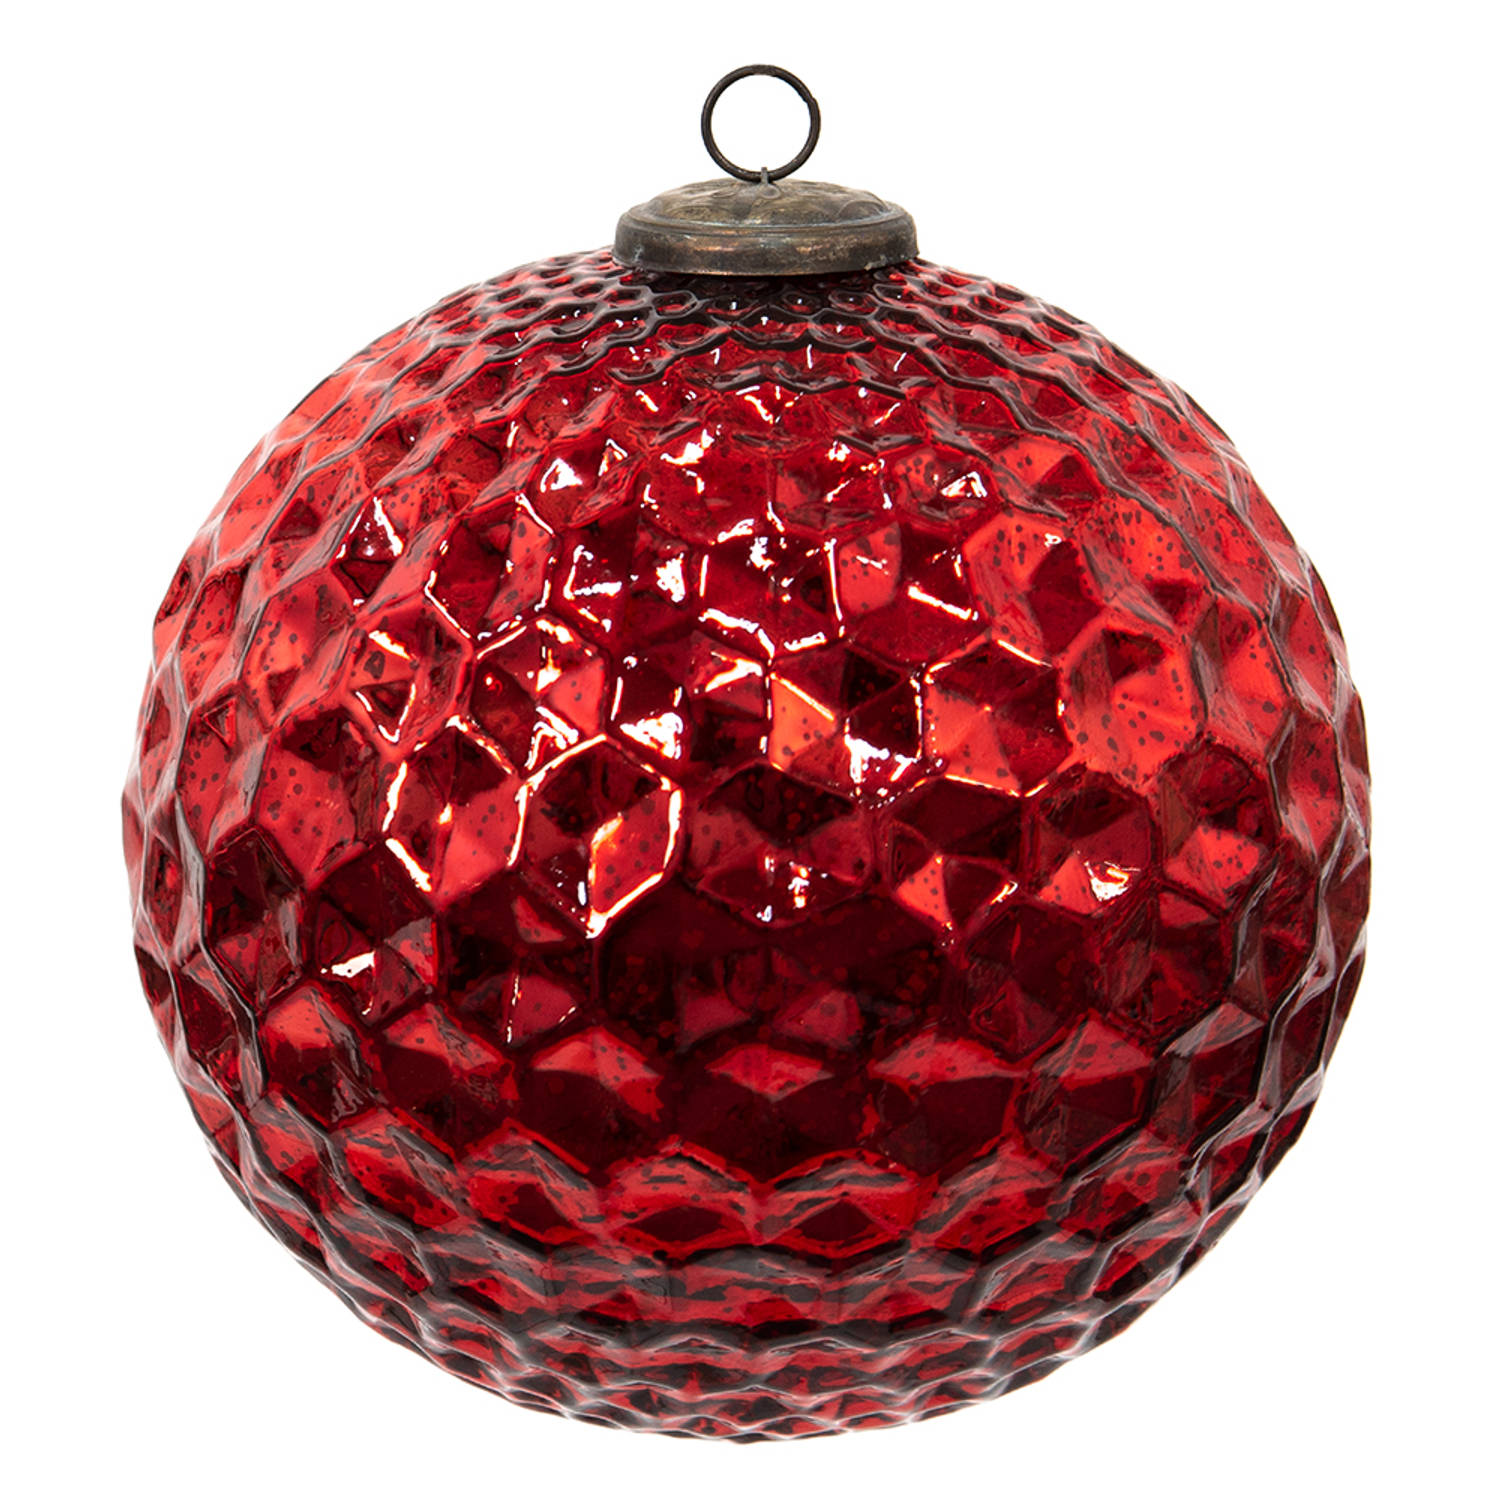 HAES DECO - Kerstbal Groot XL - Formaat Ø 25x25 cm - Kleur Rood - Materiaal Glas - Kerstversiering, Kerstdecoratie, Decoratie Hanger, Kerstboomversiering